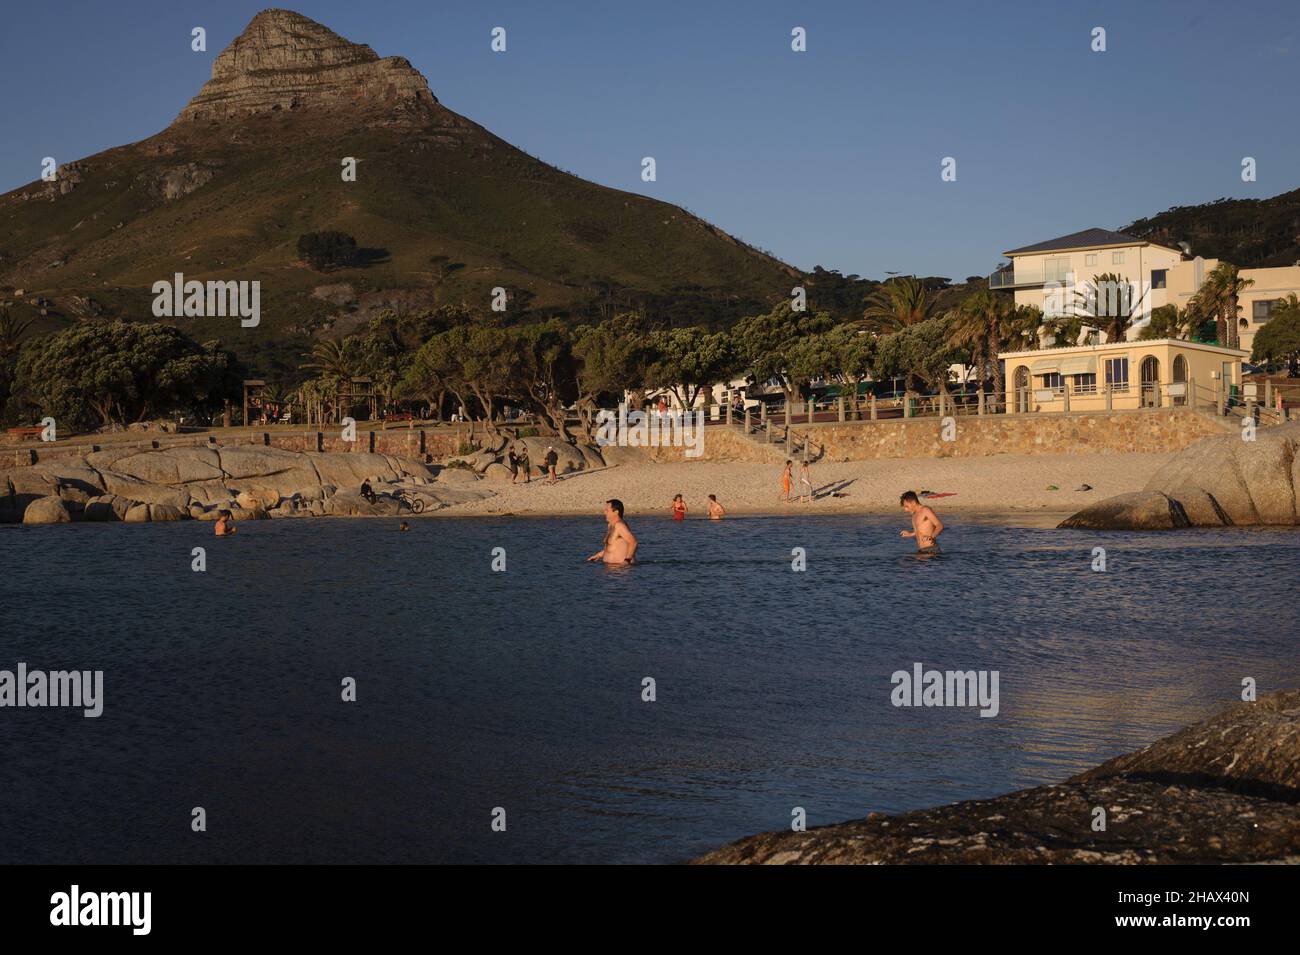 La piscine à marée de la banlieue côtière de Camp's Bay du Cap attire à la fois les habitants et les touristes pour ses eaux calmes et les avantages de la baignade en eau froide Banque D'Images